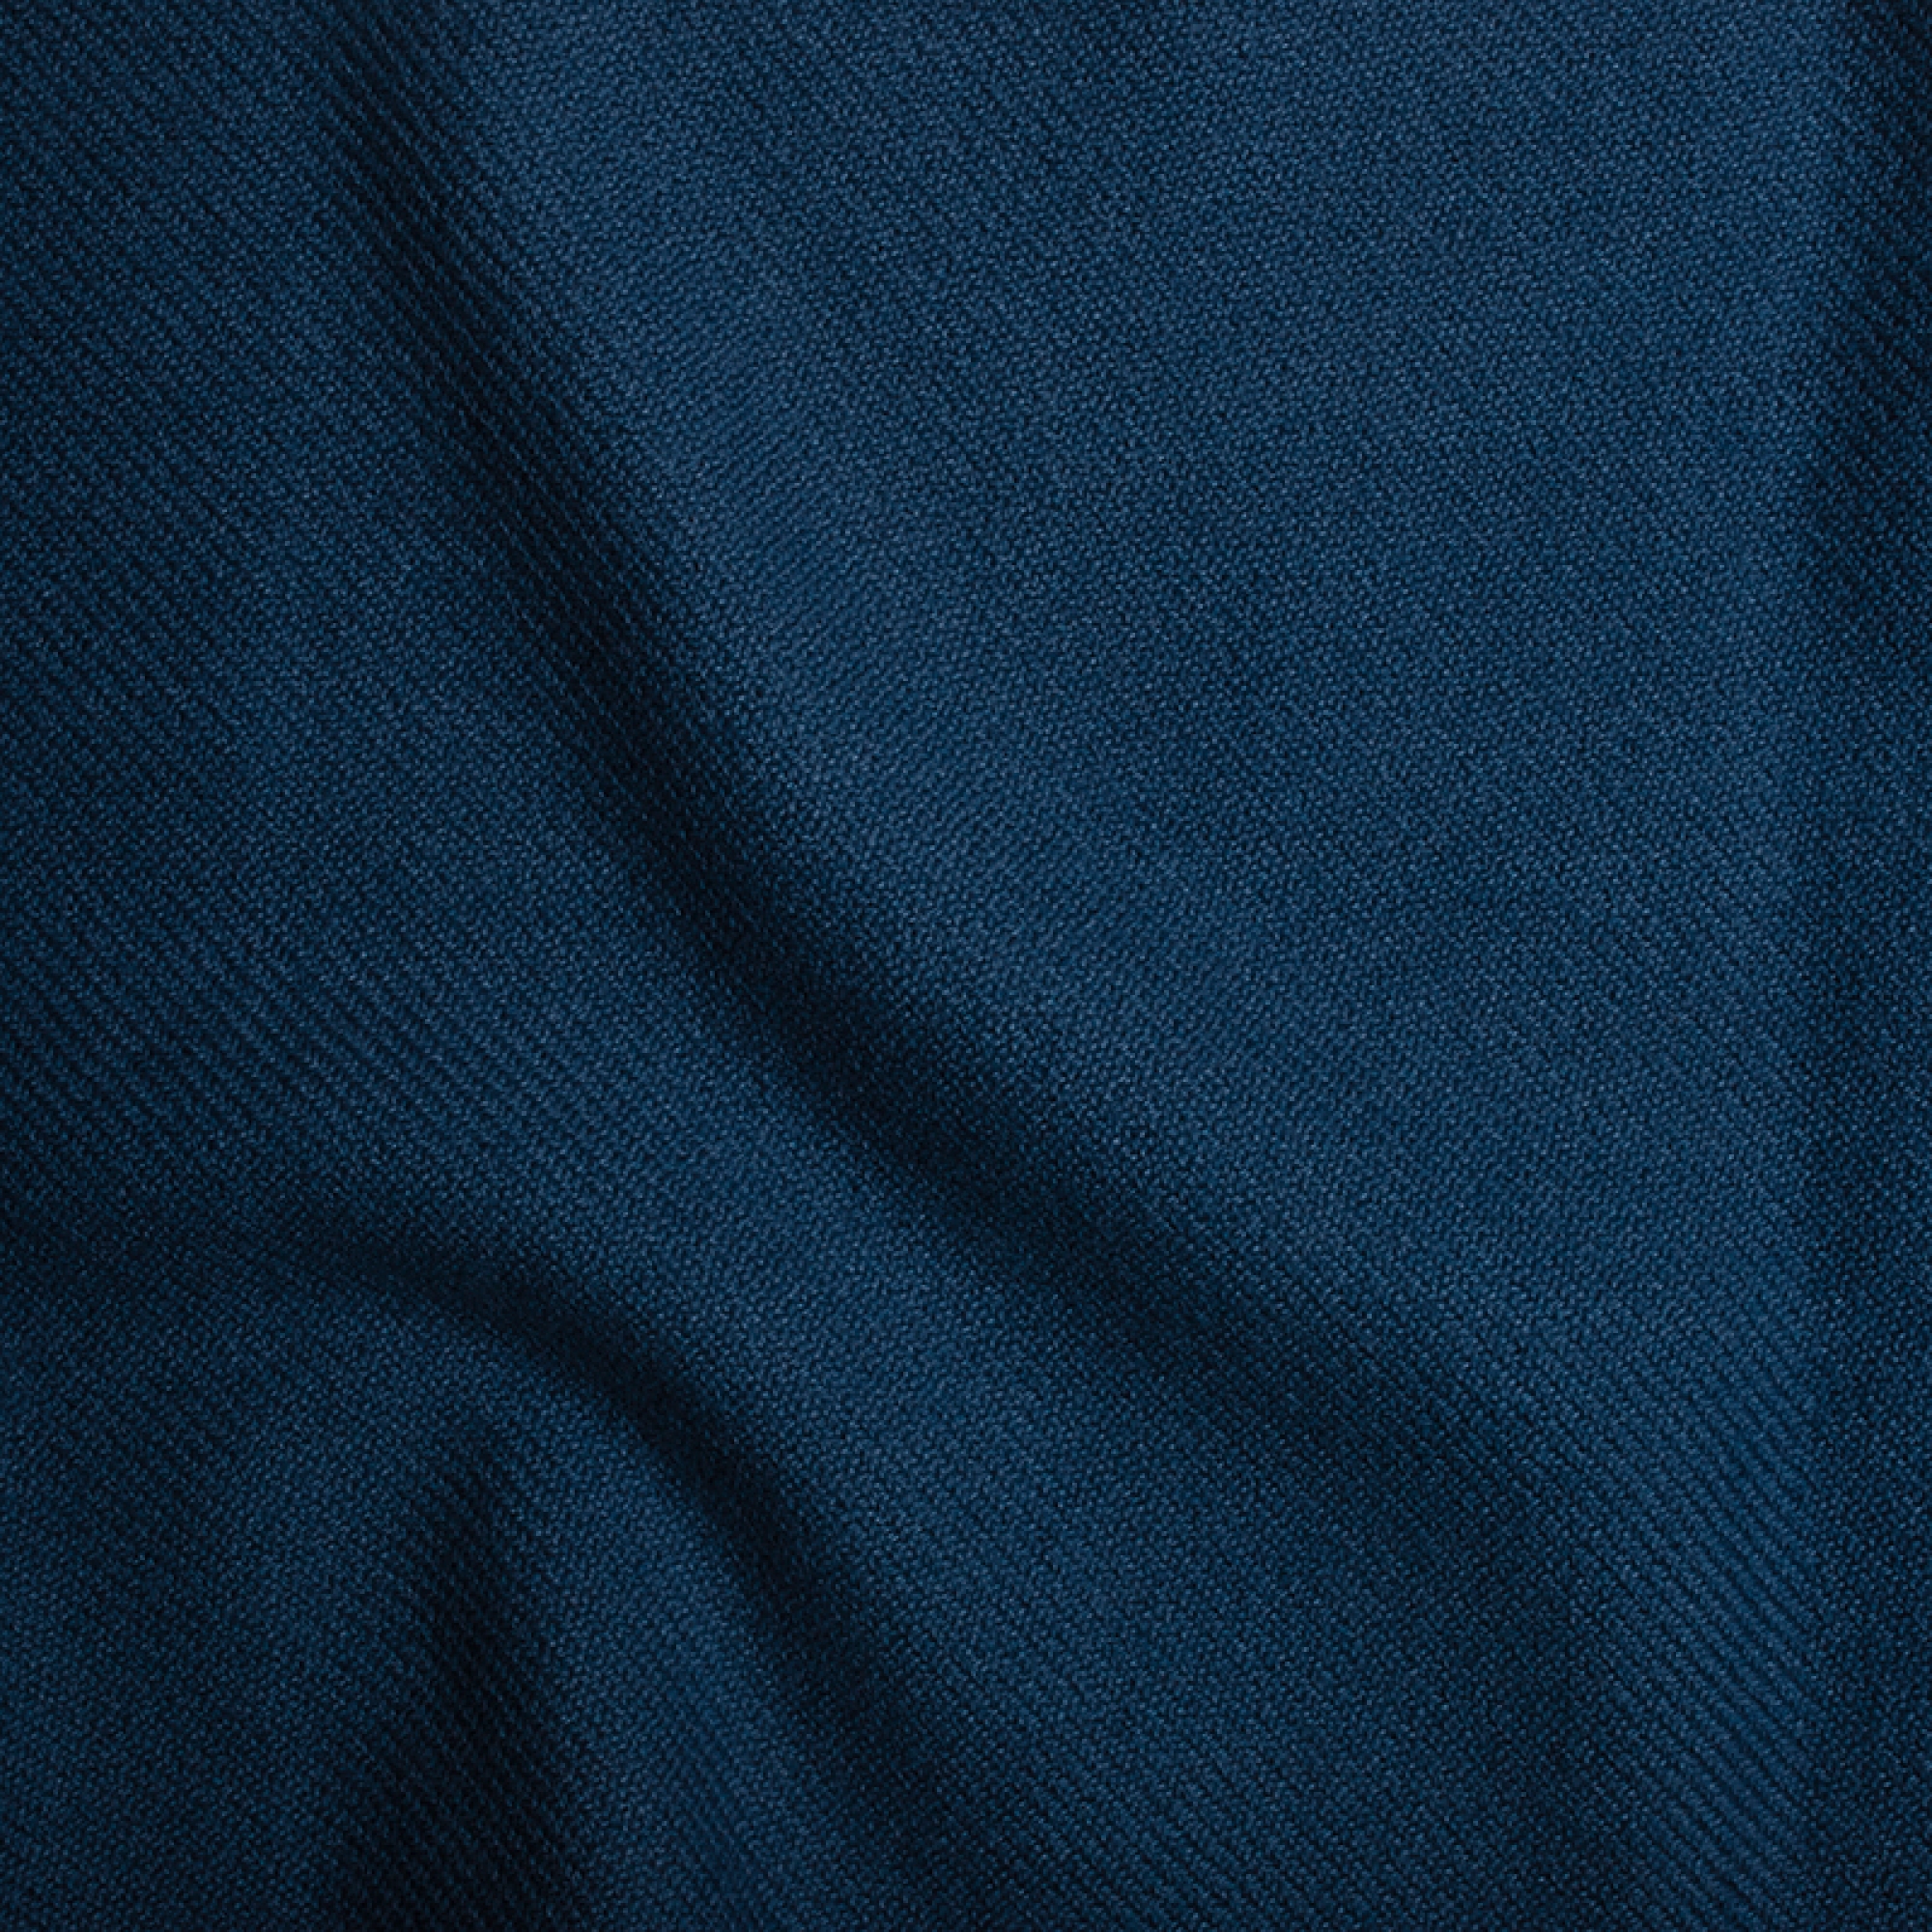 Cashmere accessories blanket frisbi 147 x 203 dark blue 147 x 203 cm